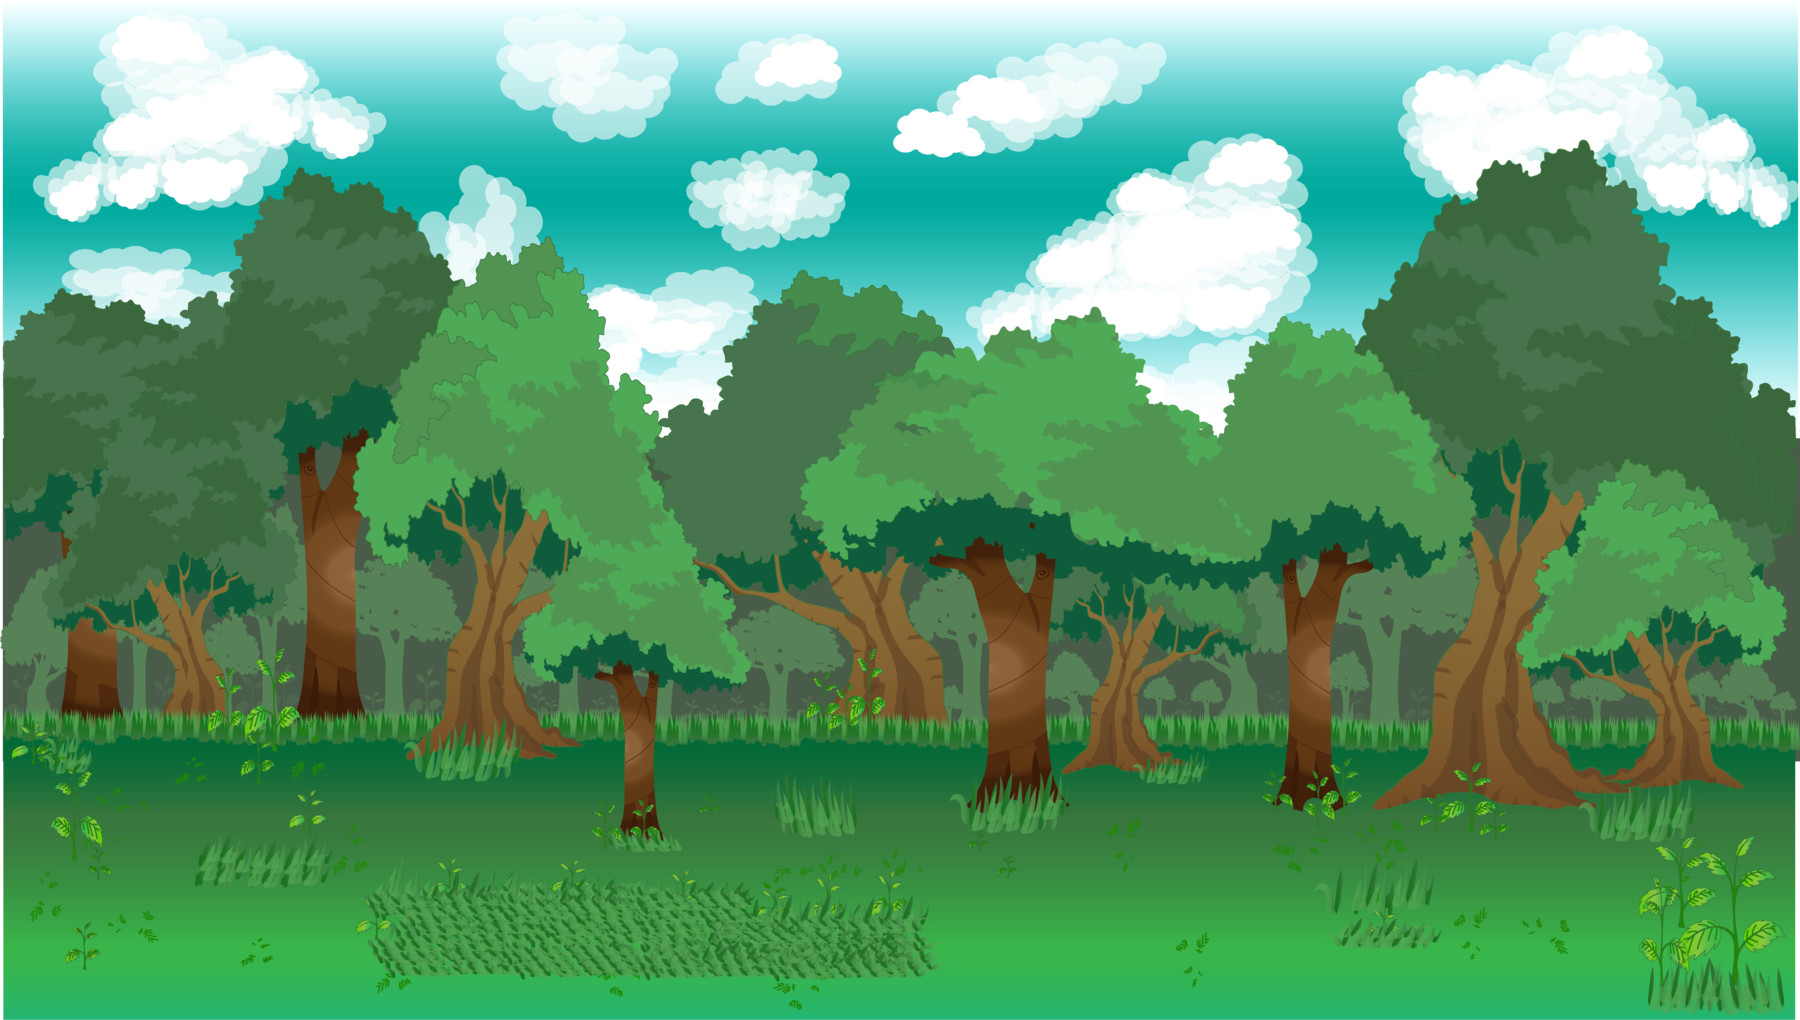 Hình nền rừng trò chơi 2D là một trong những chủ đề được yêu thích nhất trong cộng đồng game thủ. Với những hình nền mô tả rừng xanh tươi, đầy tính phiêu lưu và bí ẩn, bạn sẽ được trải nghiệm cuộc phiêu lưu đầy hấp dẫn. Điểm qua những hình ảnh độc đáo và chân thực nhất trên DeviantArt.